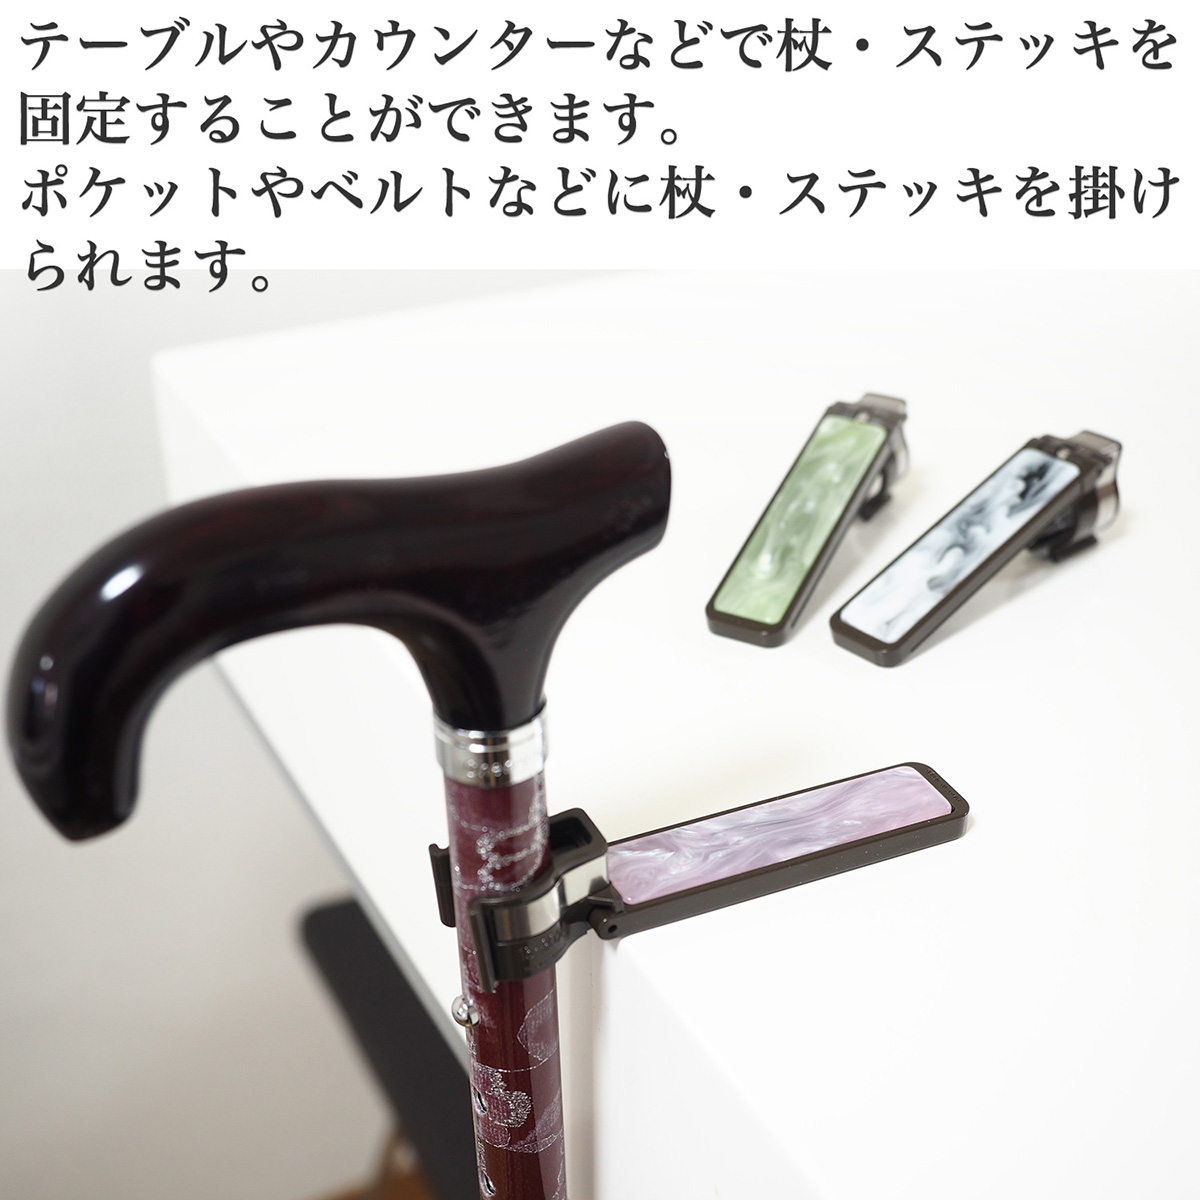 土屋産業 杖ホルダー 日本製 杖置き ステッキホルダー マーブル調 